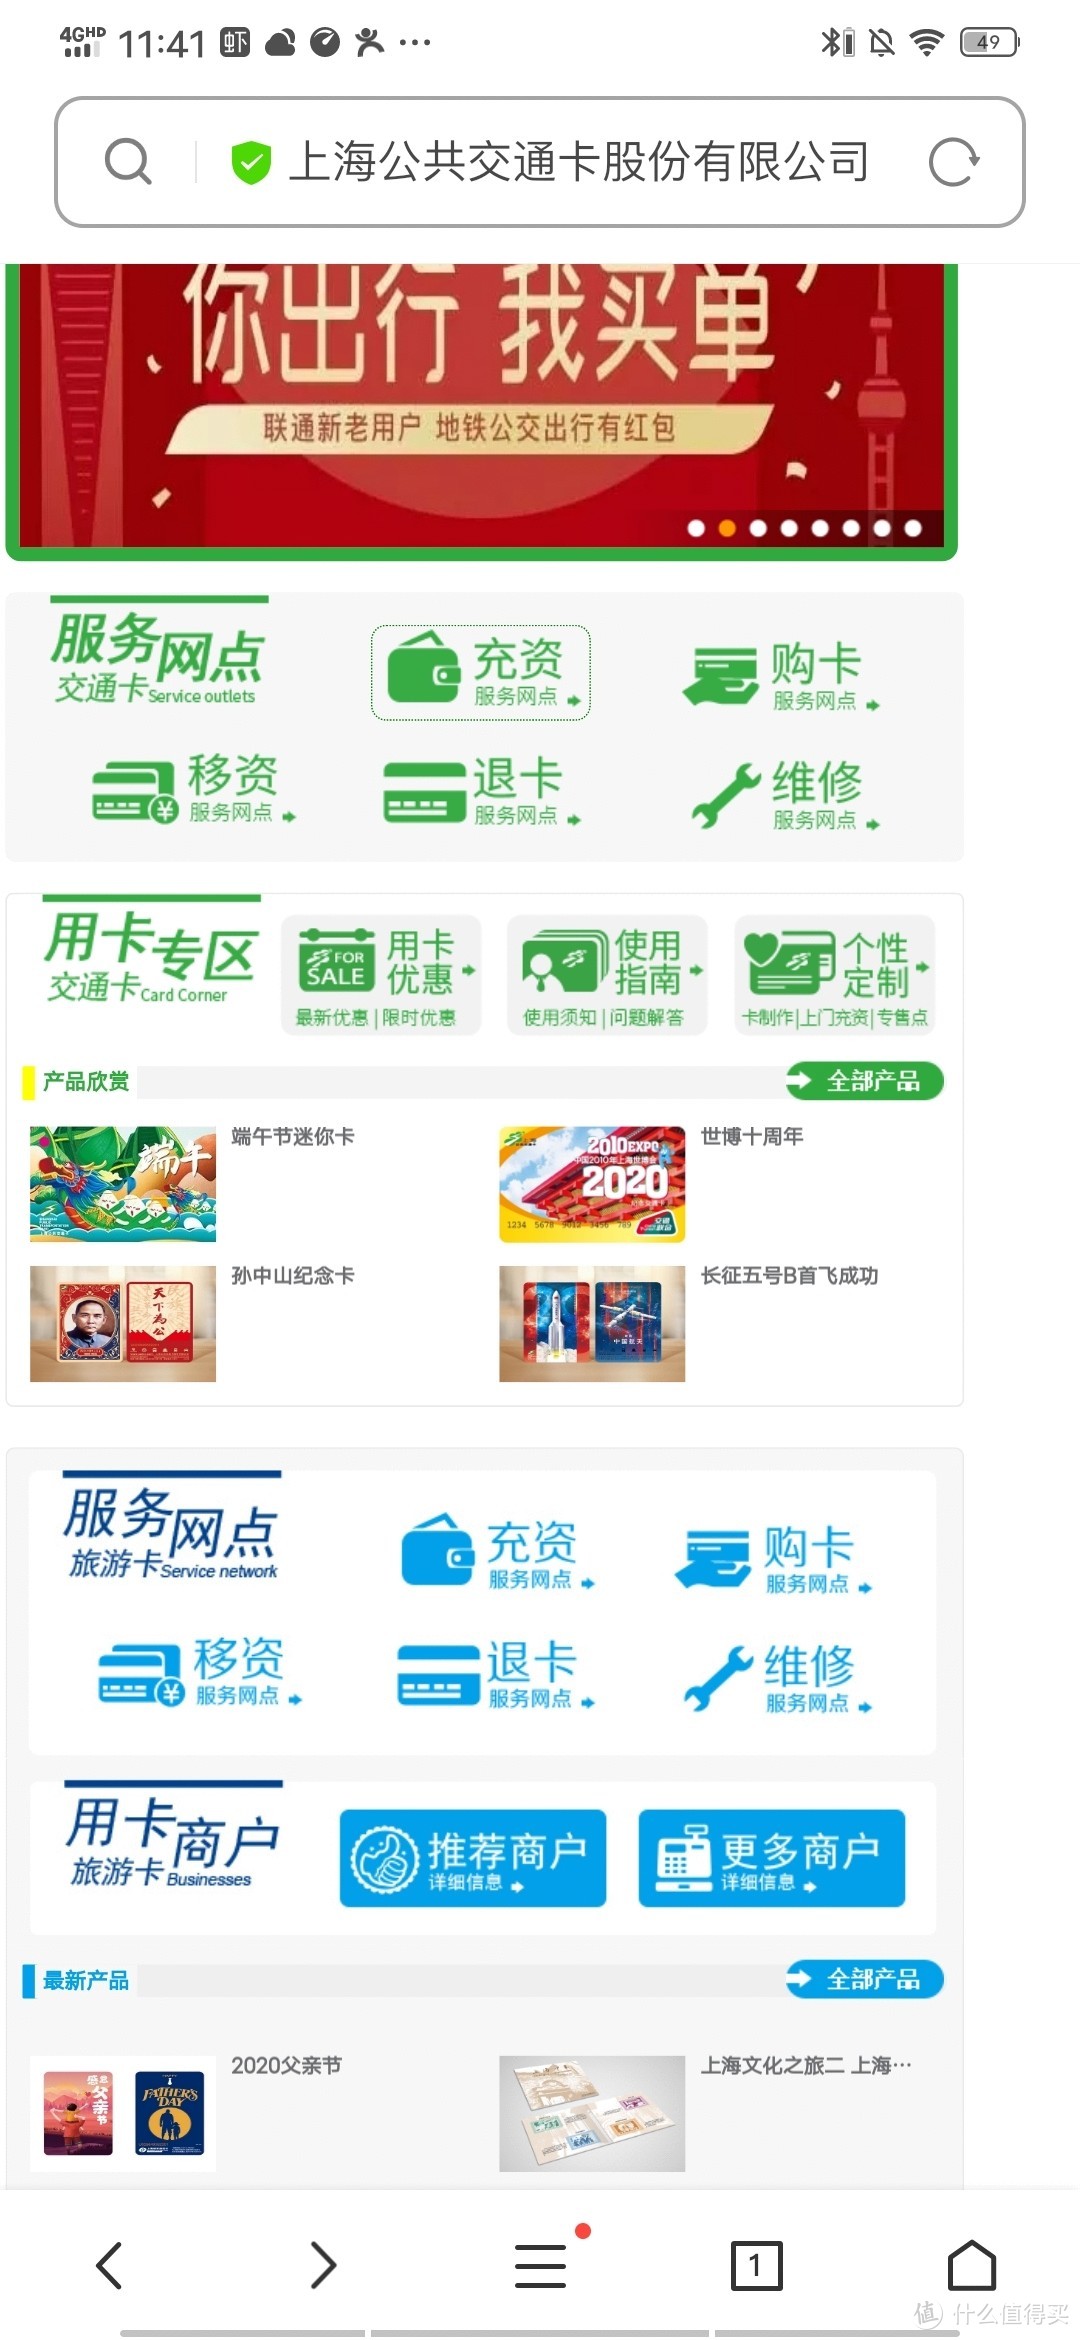 怎么查询上海公共交通卡的余额查询+怎么退卡？原来没那么简单